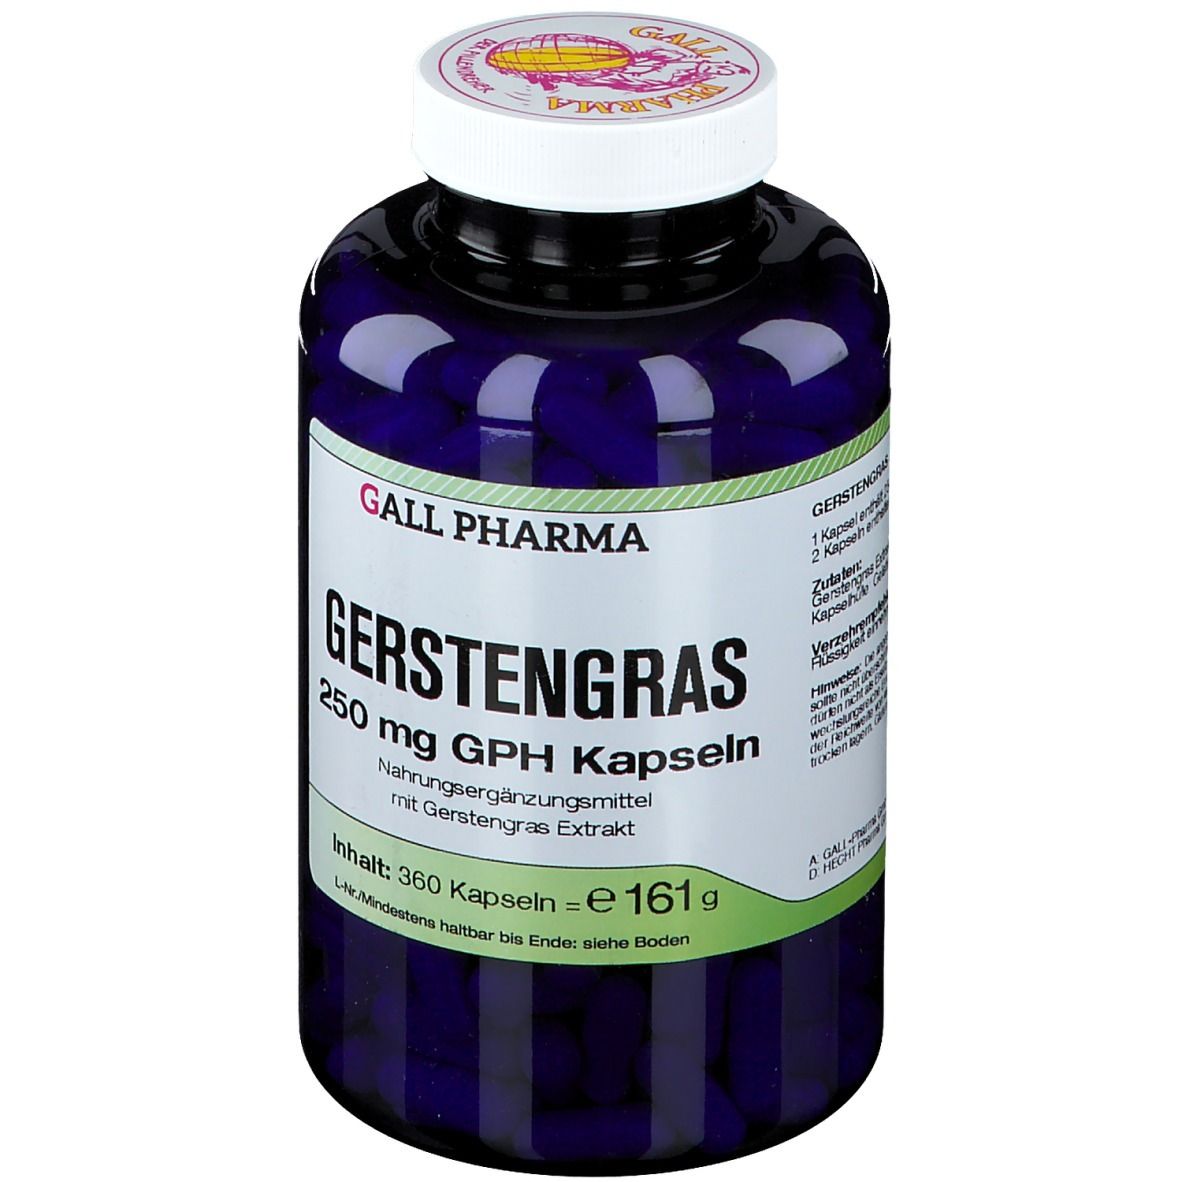 GALL PHARMA Gerstengras 250 mg GPH Kapseln